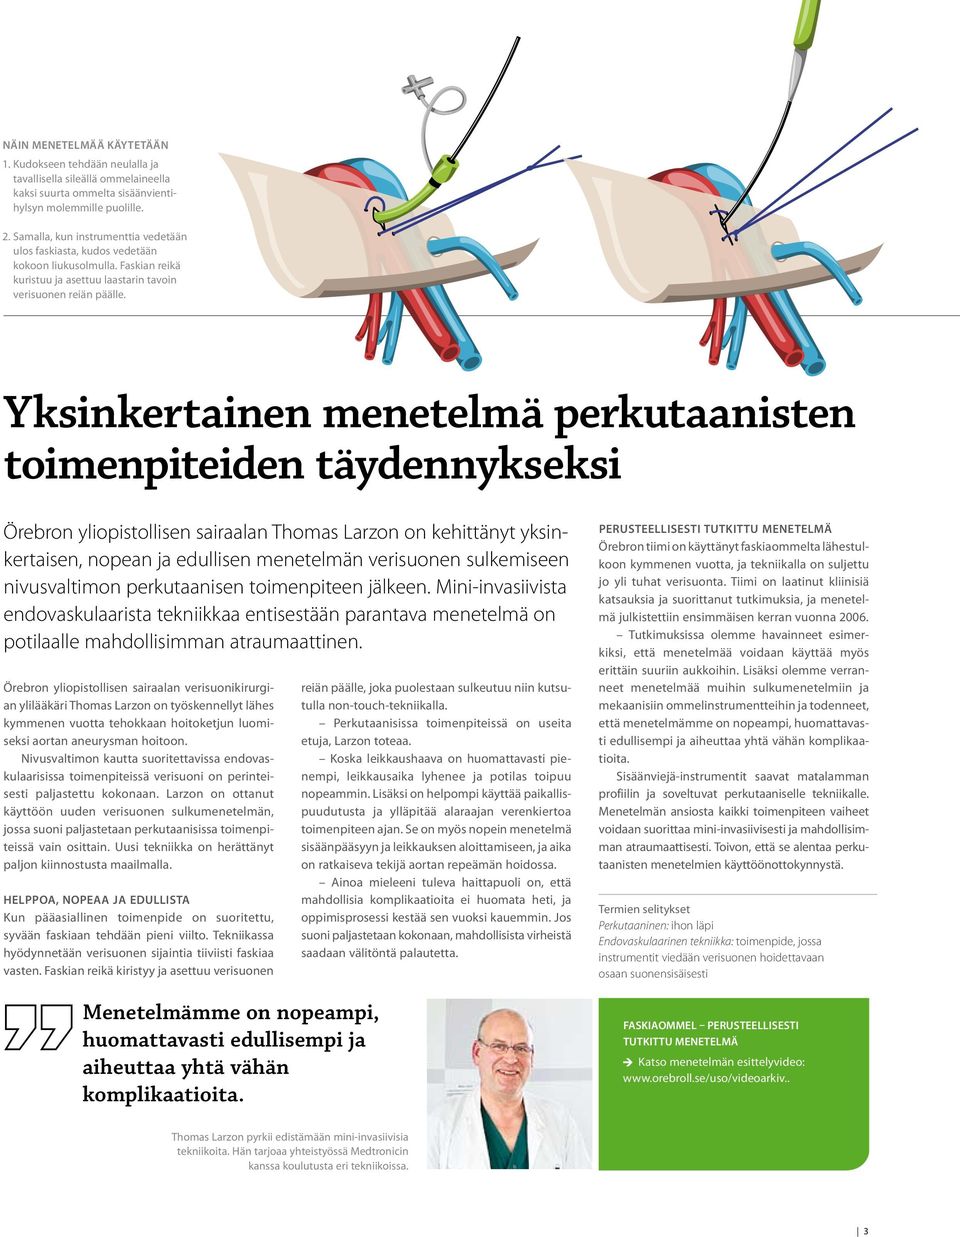 Yksinkertainen menetelmä perkutaanisten toimenpiteiden täydennykseksi Örebron yliopistollisen sairaalan Thomas Larzon on kehittänyt yksinkertaisen, nopean ja edullisen menetelmän verisuonen